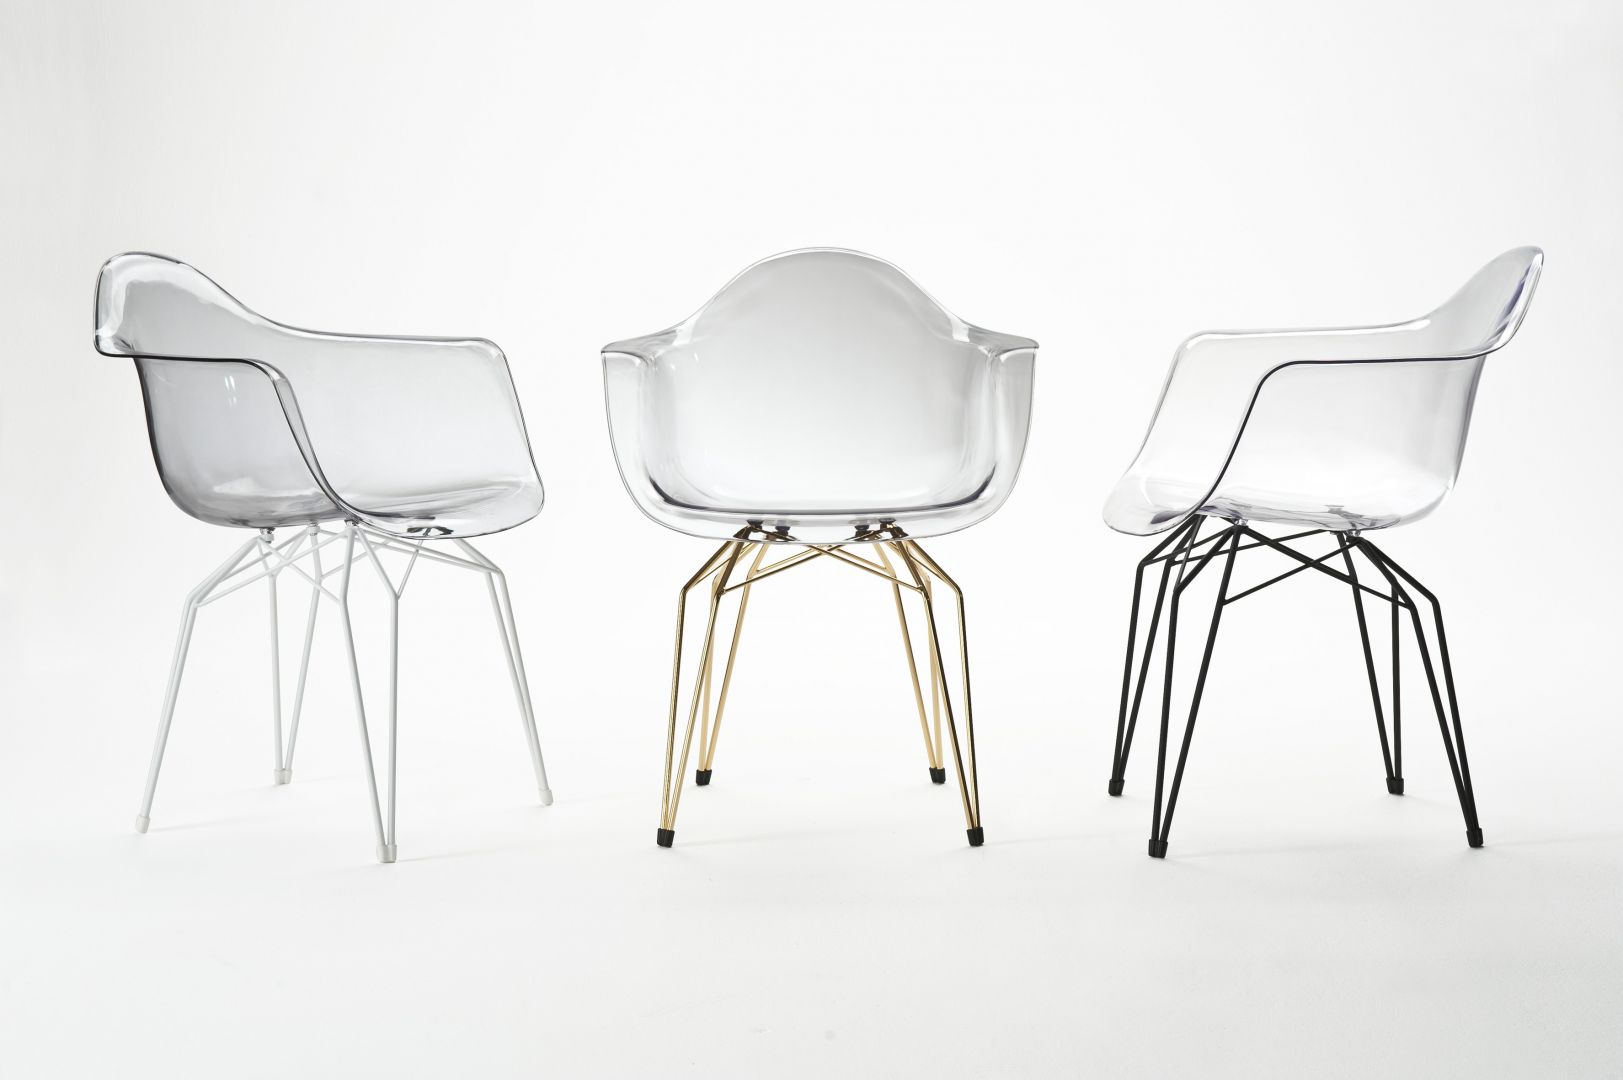 Krzesło Diamond Arm Chair wykonane jest z transparentnego poliwęglanu, podstawa siedziska jest ze stali chromowanej. Lekki design krzeseł marki stwarza możliwość aranżacji zarówno w tradycyjnych wnętrzach, jak i w nowoczesnych. Fot. Kubikoff  